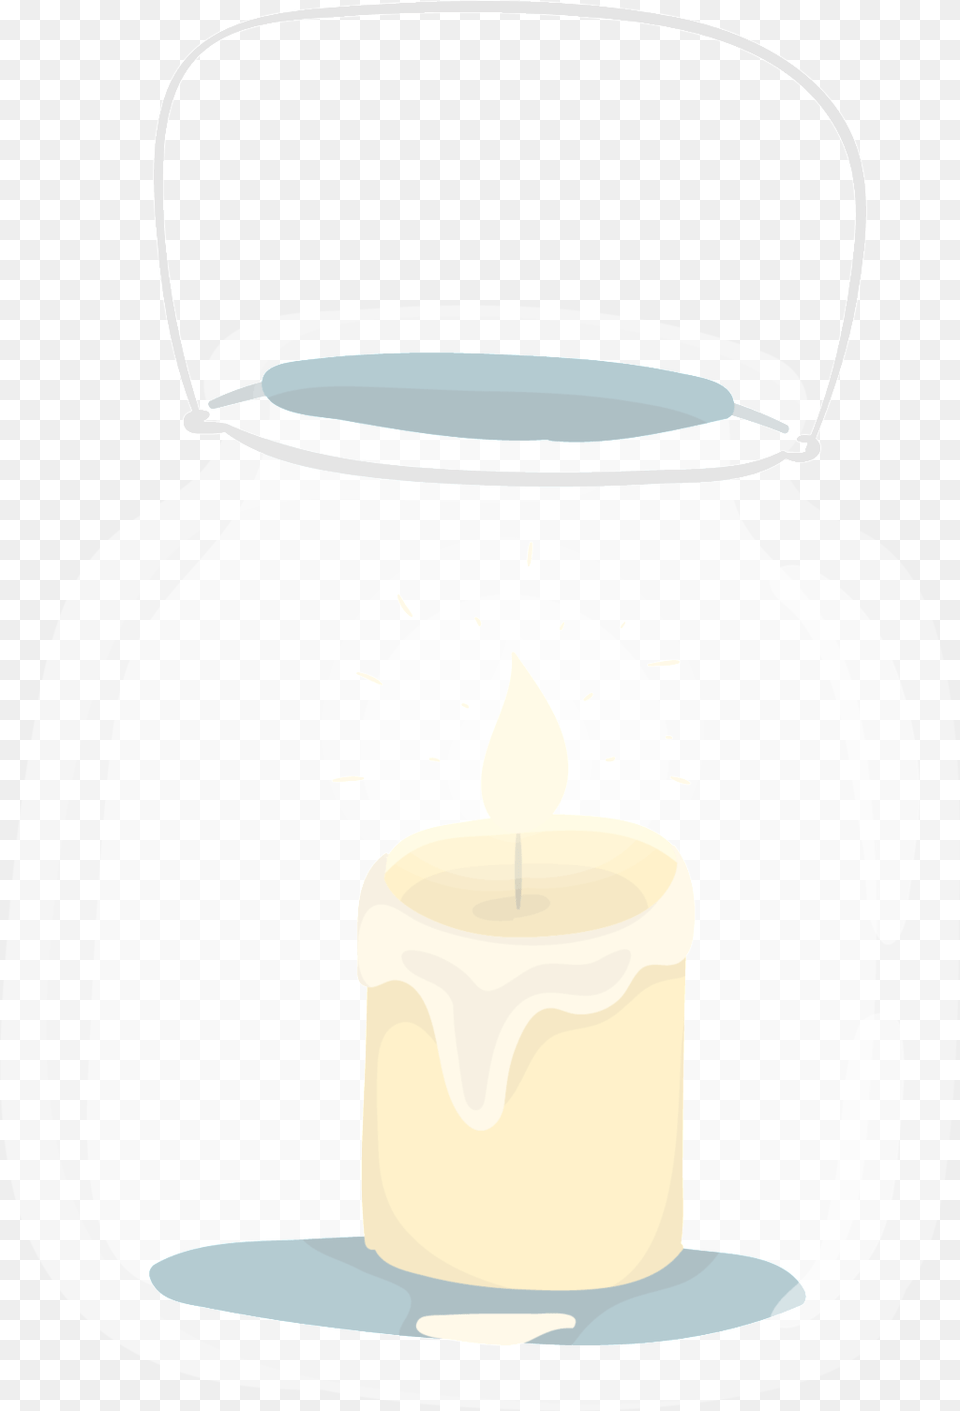 Small Yellow Velas Transparentes Cartoon Winter Candle, Jar Free Transparent Png